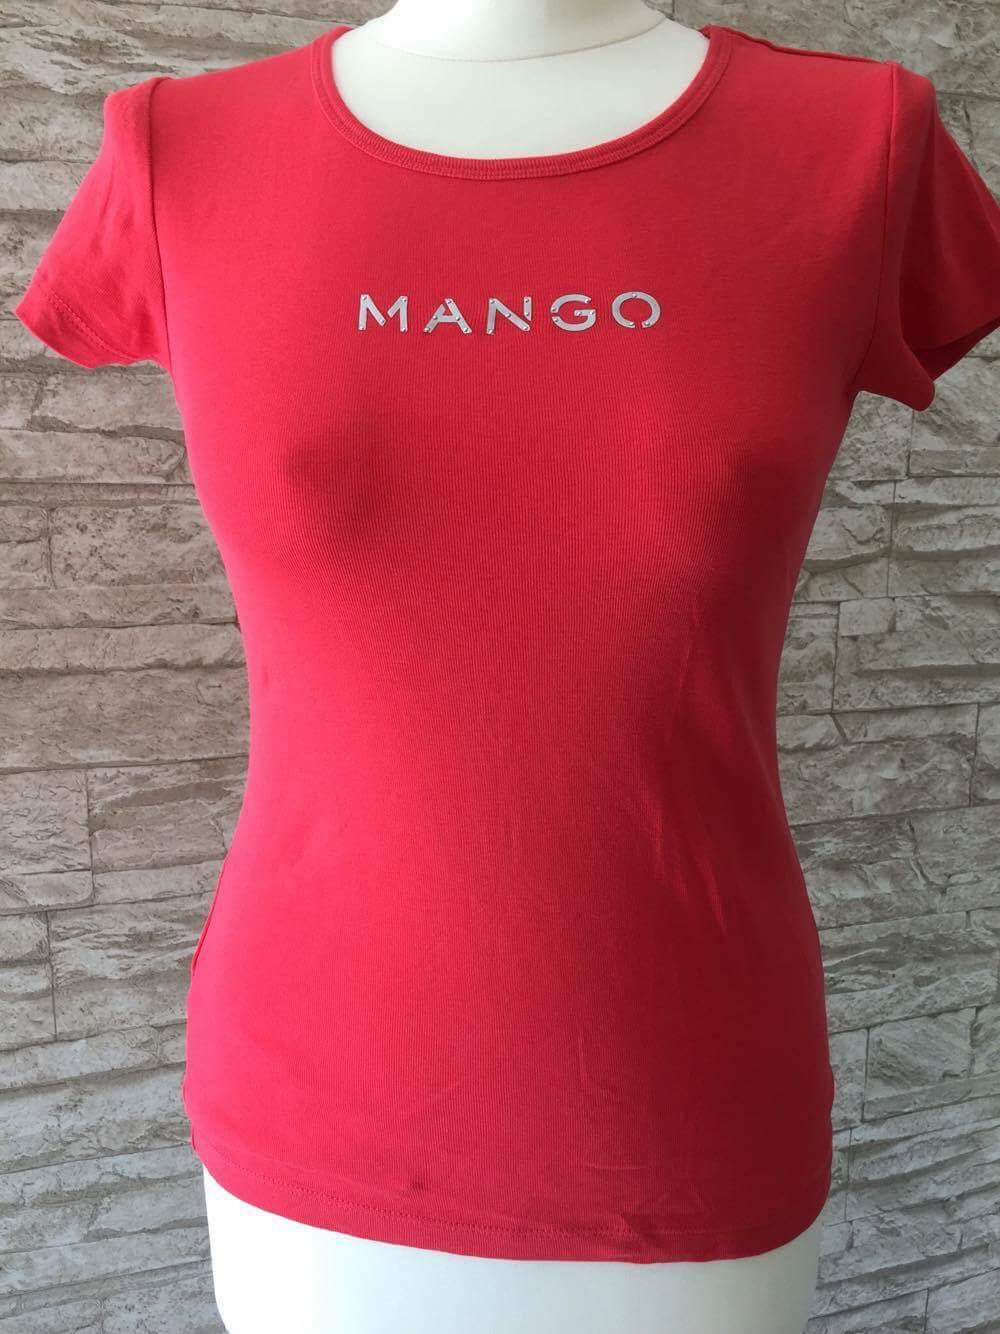 MNG Mango Shirt 
Top Zustand 
Gr. S